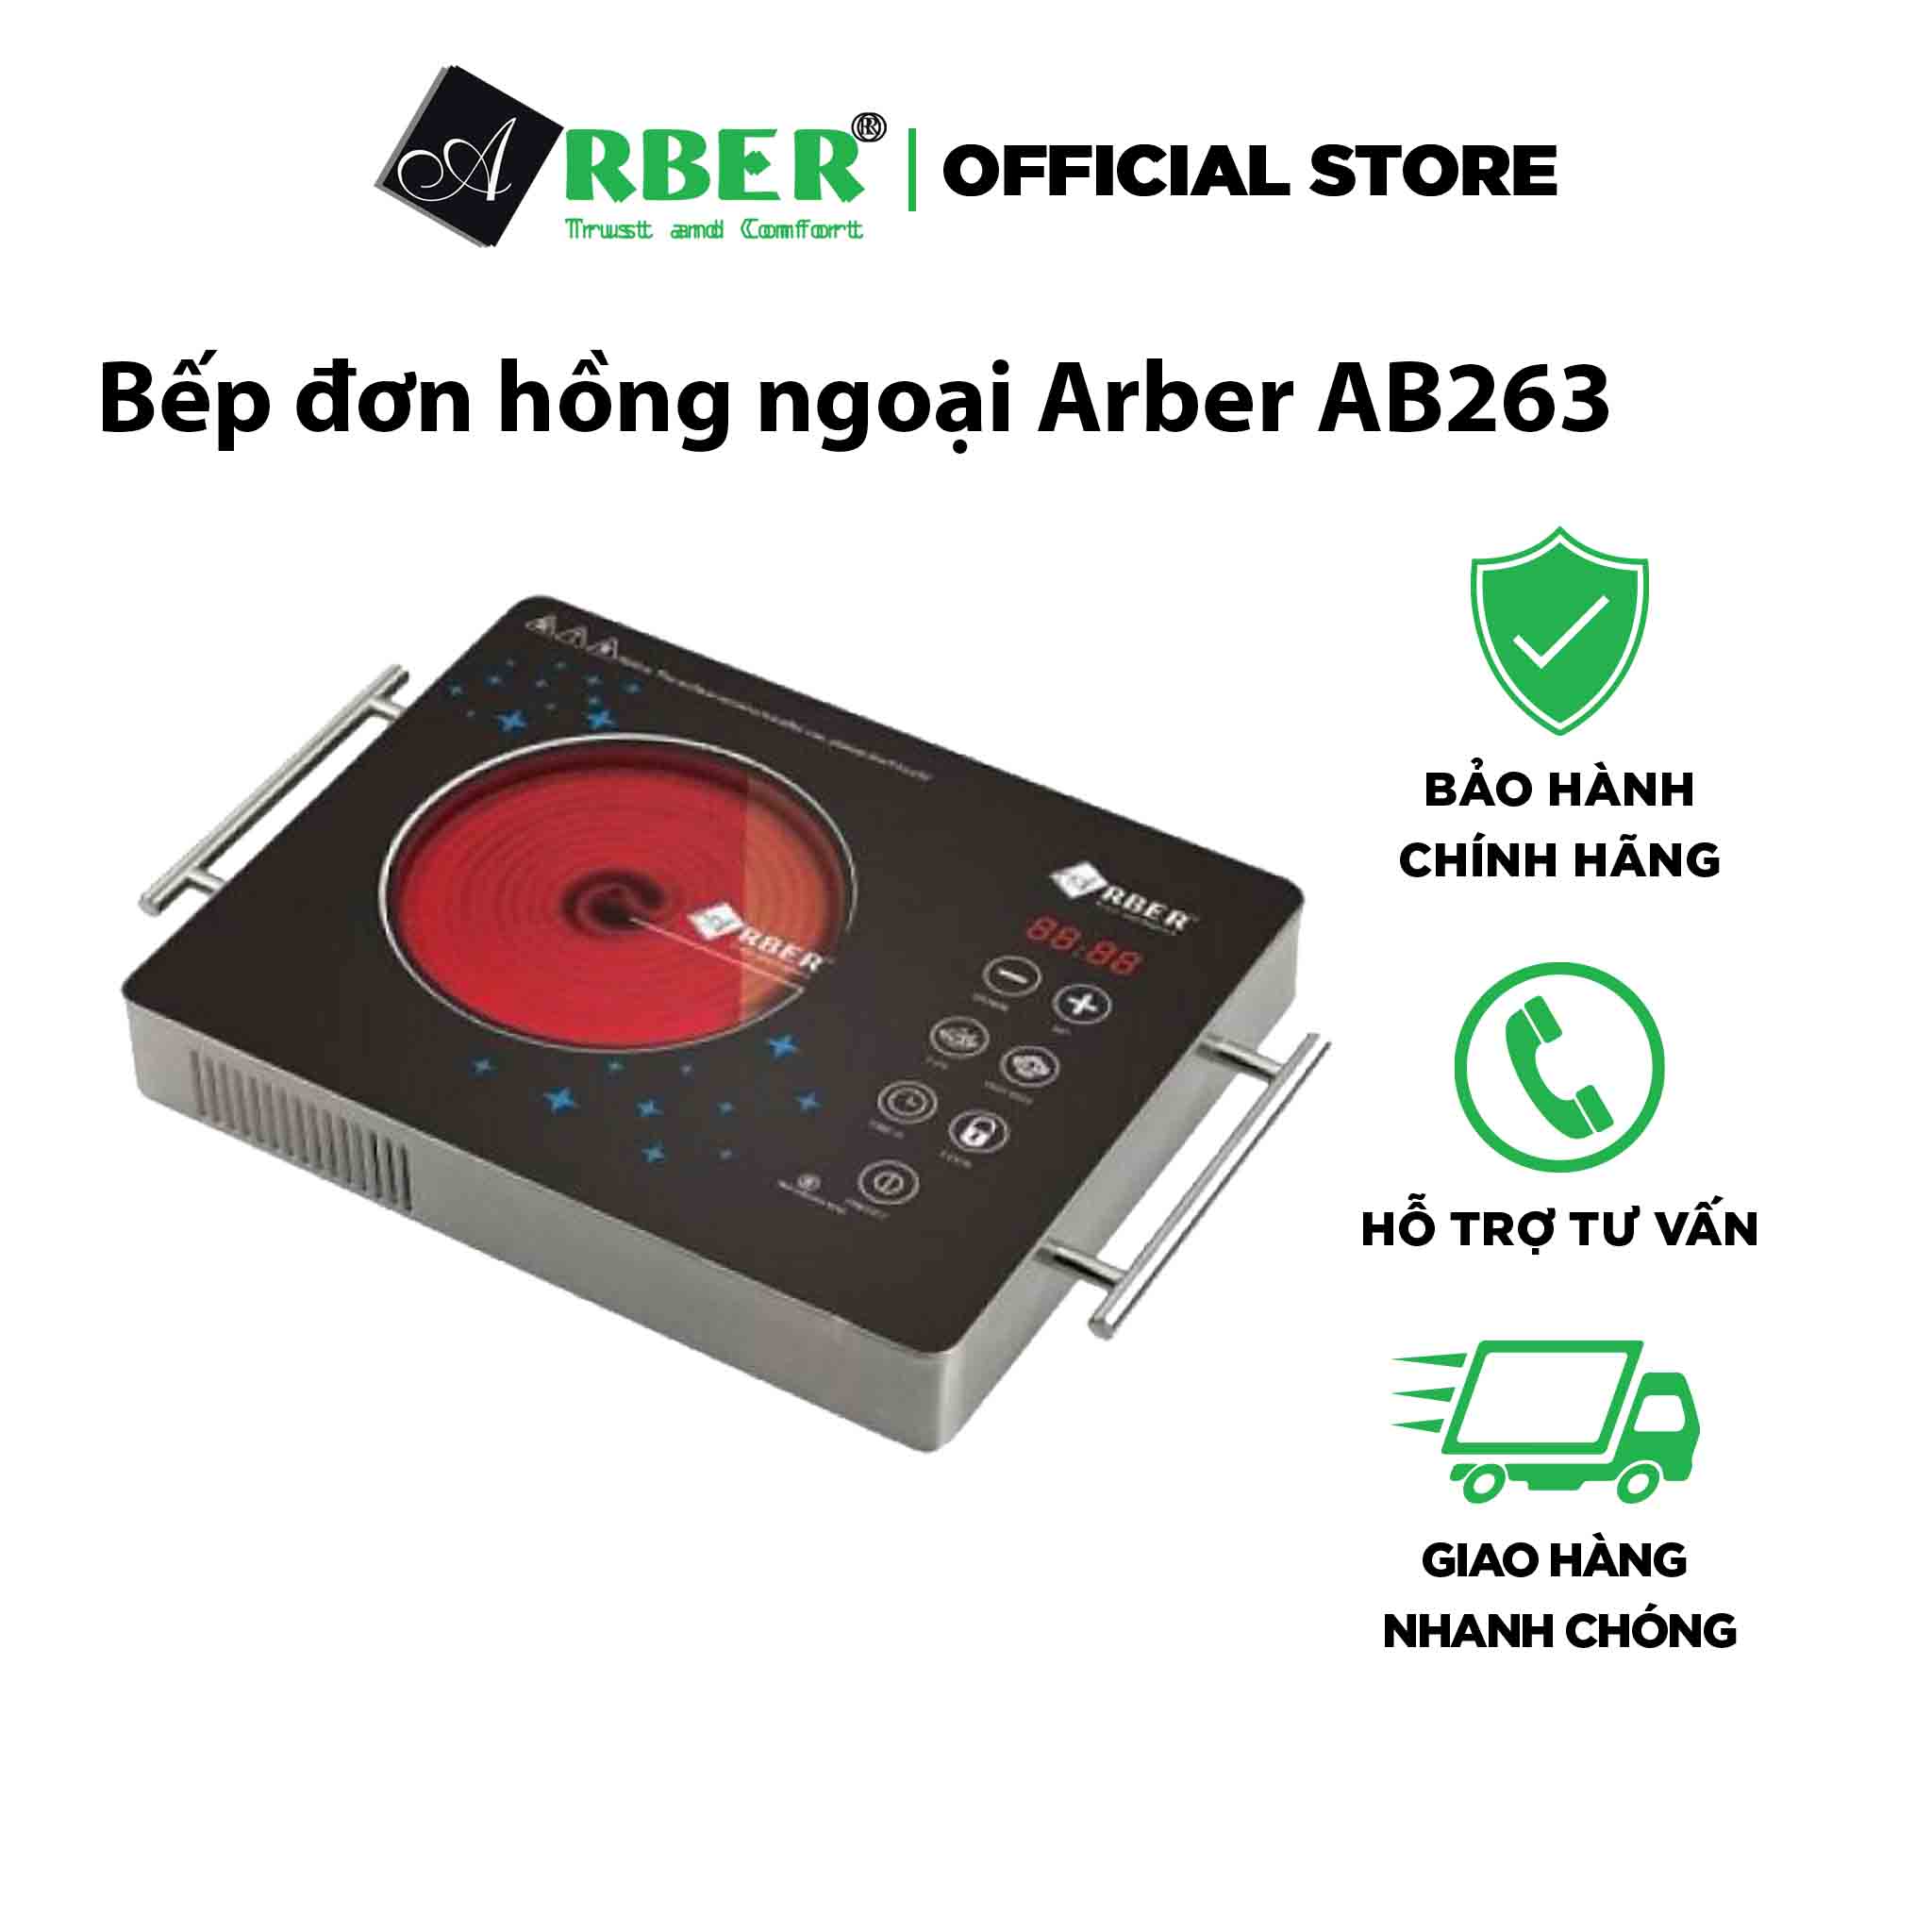 Bếp đơn hồng ngoại Arber AB263 hàng chính hãng.